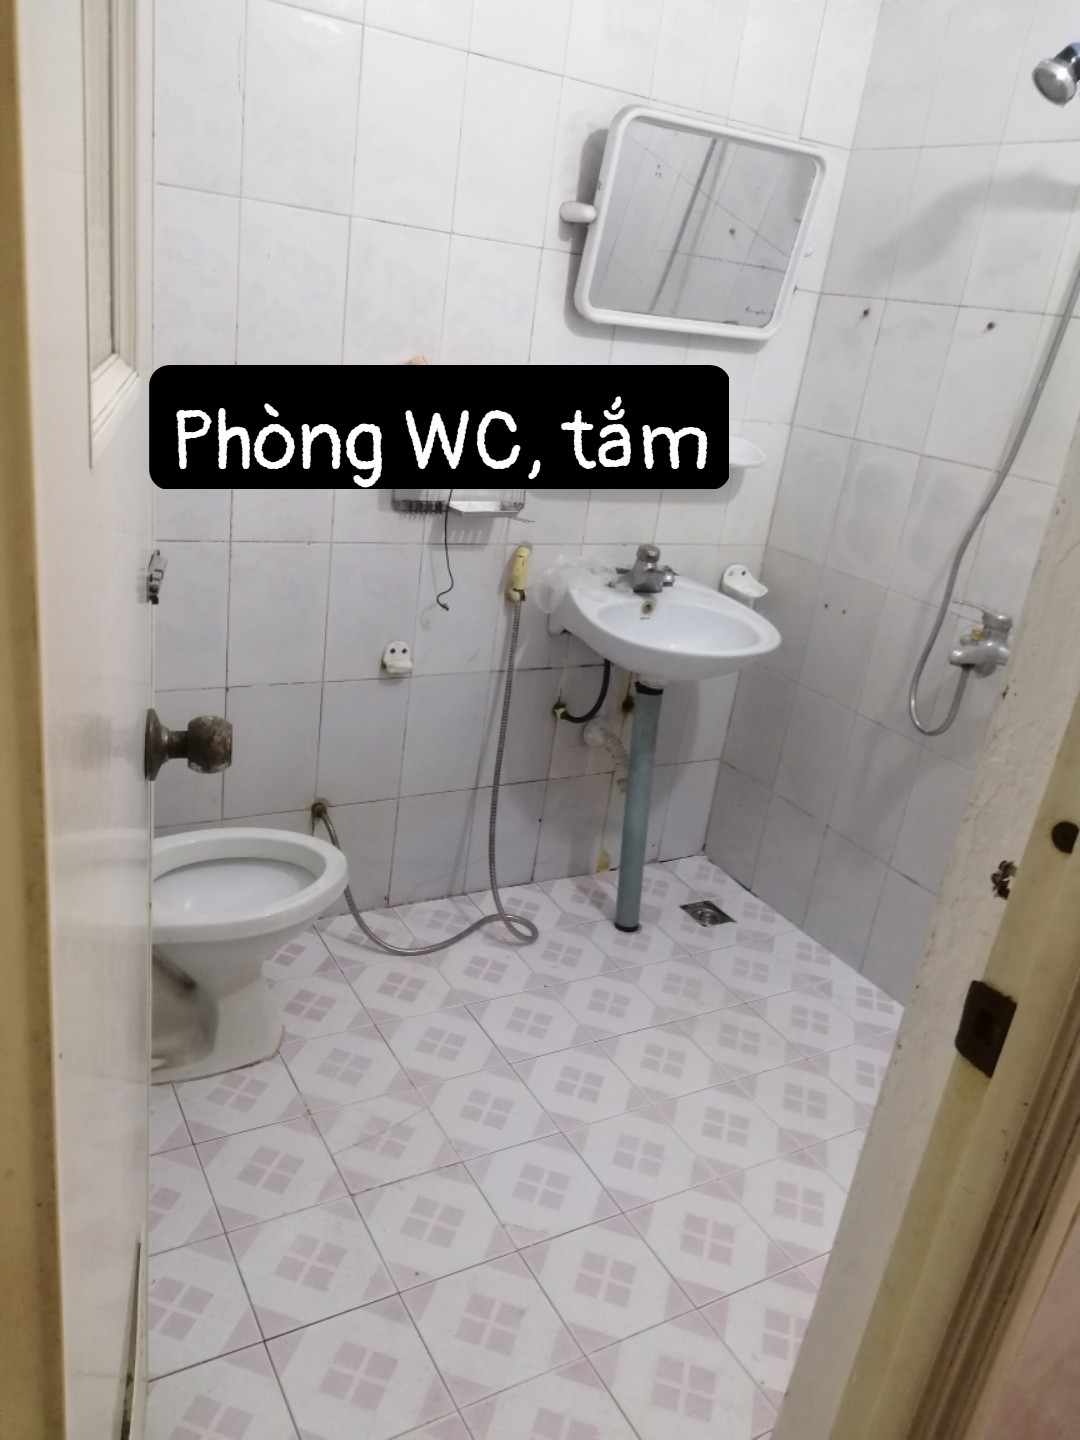 Chính chủ cho thuê nhà tầng 1 ngõ 86 phố Lương Khánh Thiện, Hoàng Mai, Hà Nội - Ảnh 4